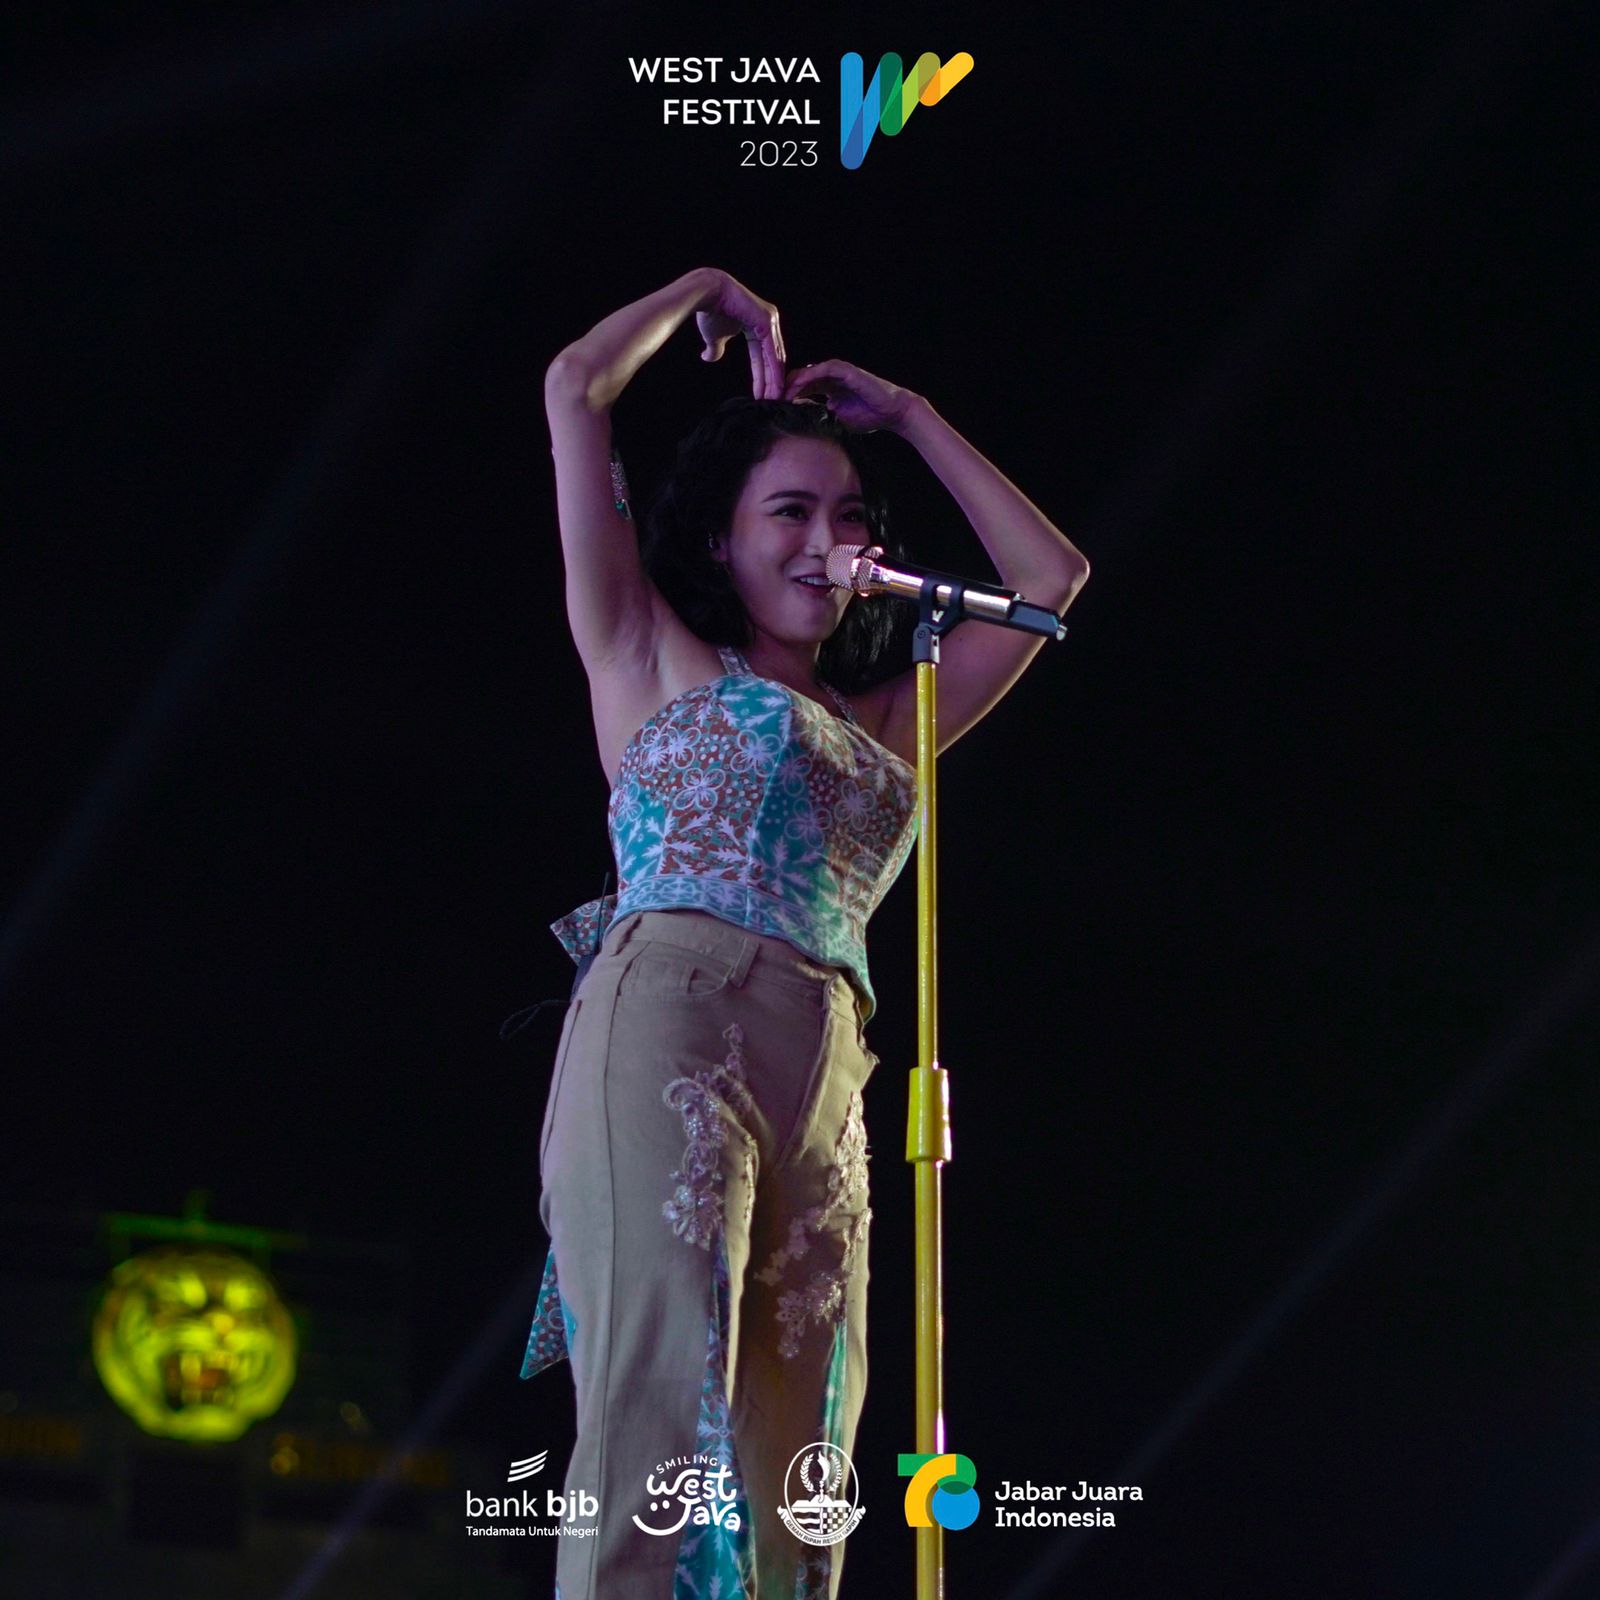 WJF Sebagai Charity Event, Hasil Konser Didonasikan untuk Seniman Sunda